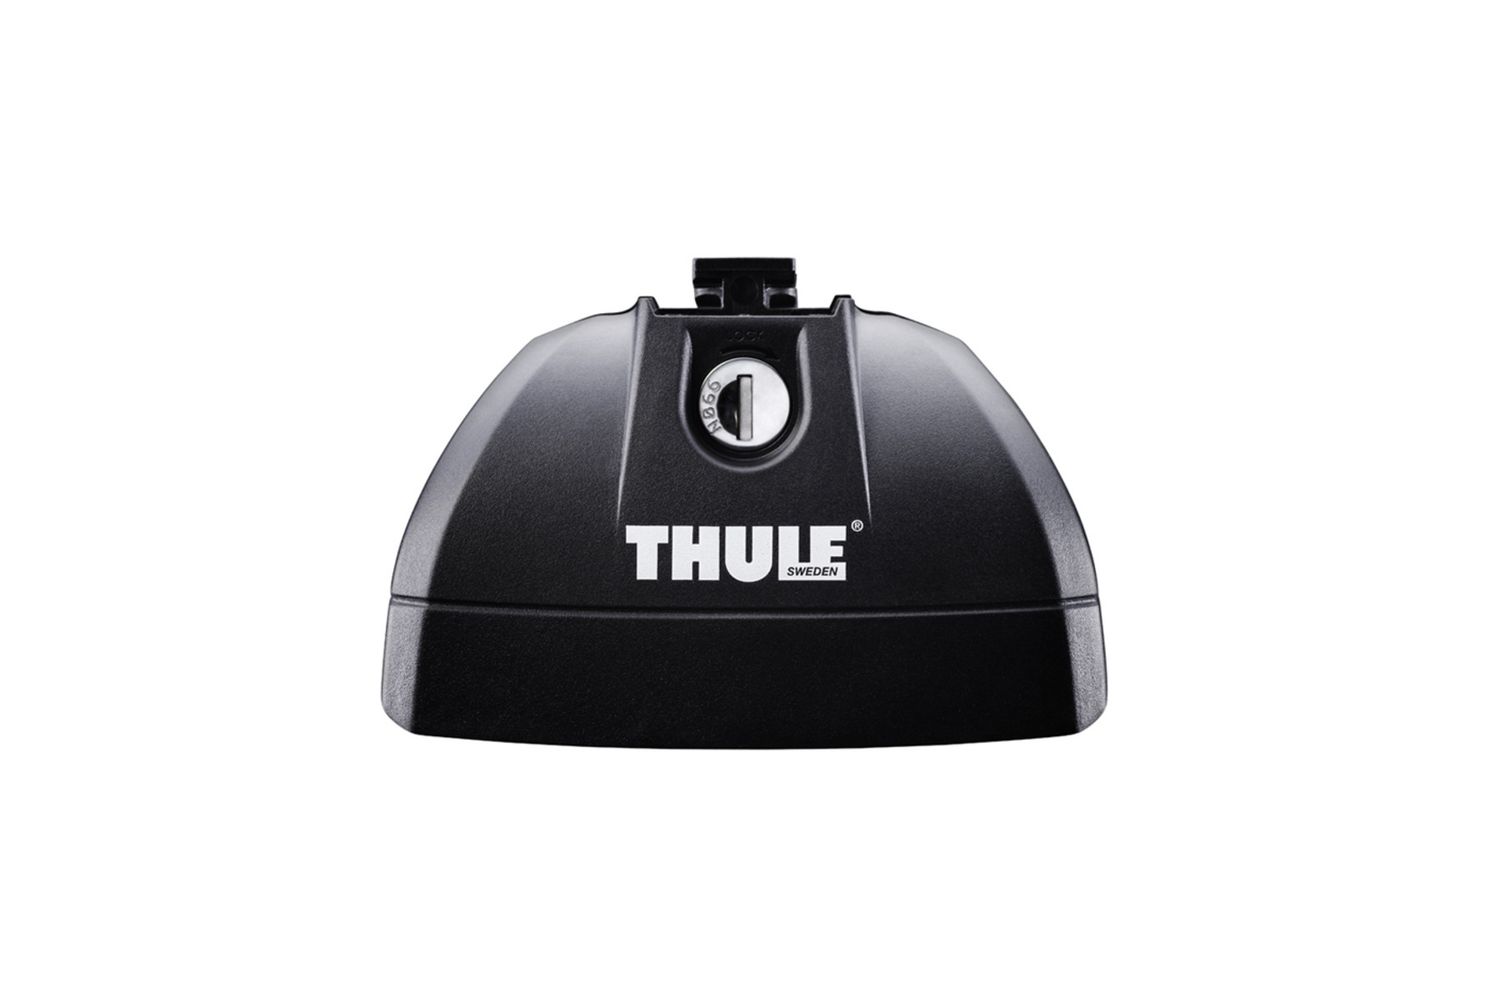 Комплект опор Thule Rapid System для автомобилей со специальными штатными местами (753) цена и фото